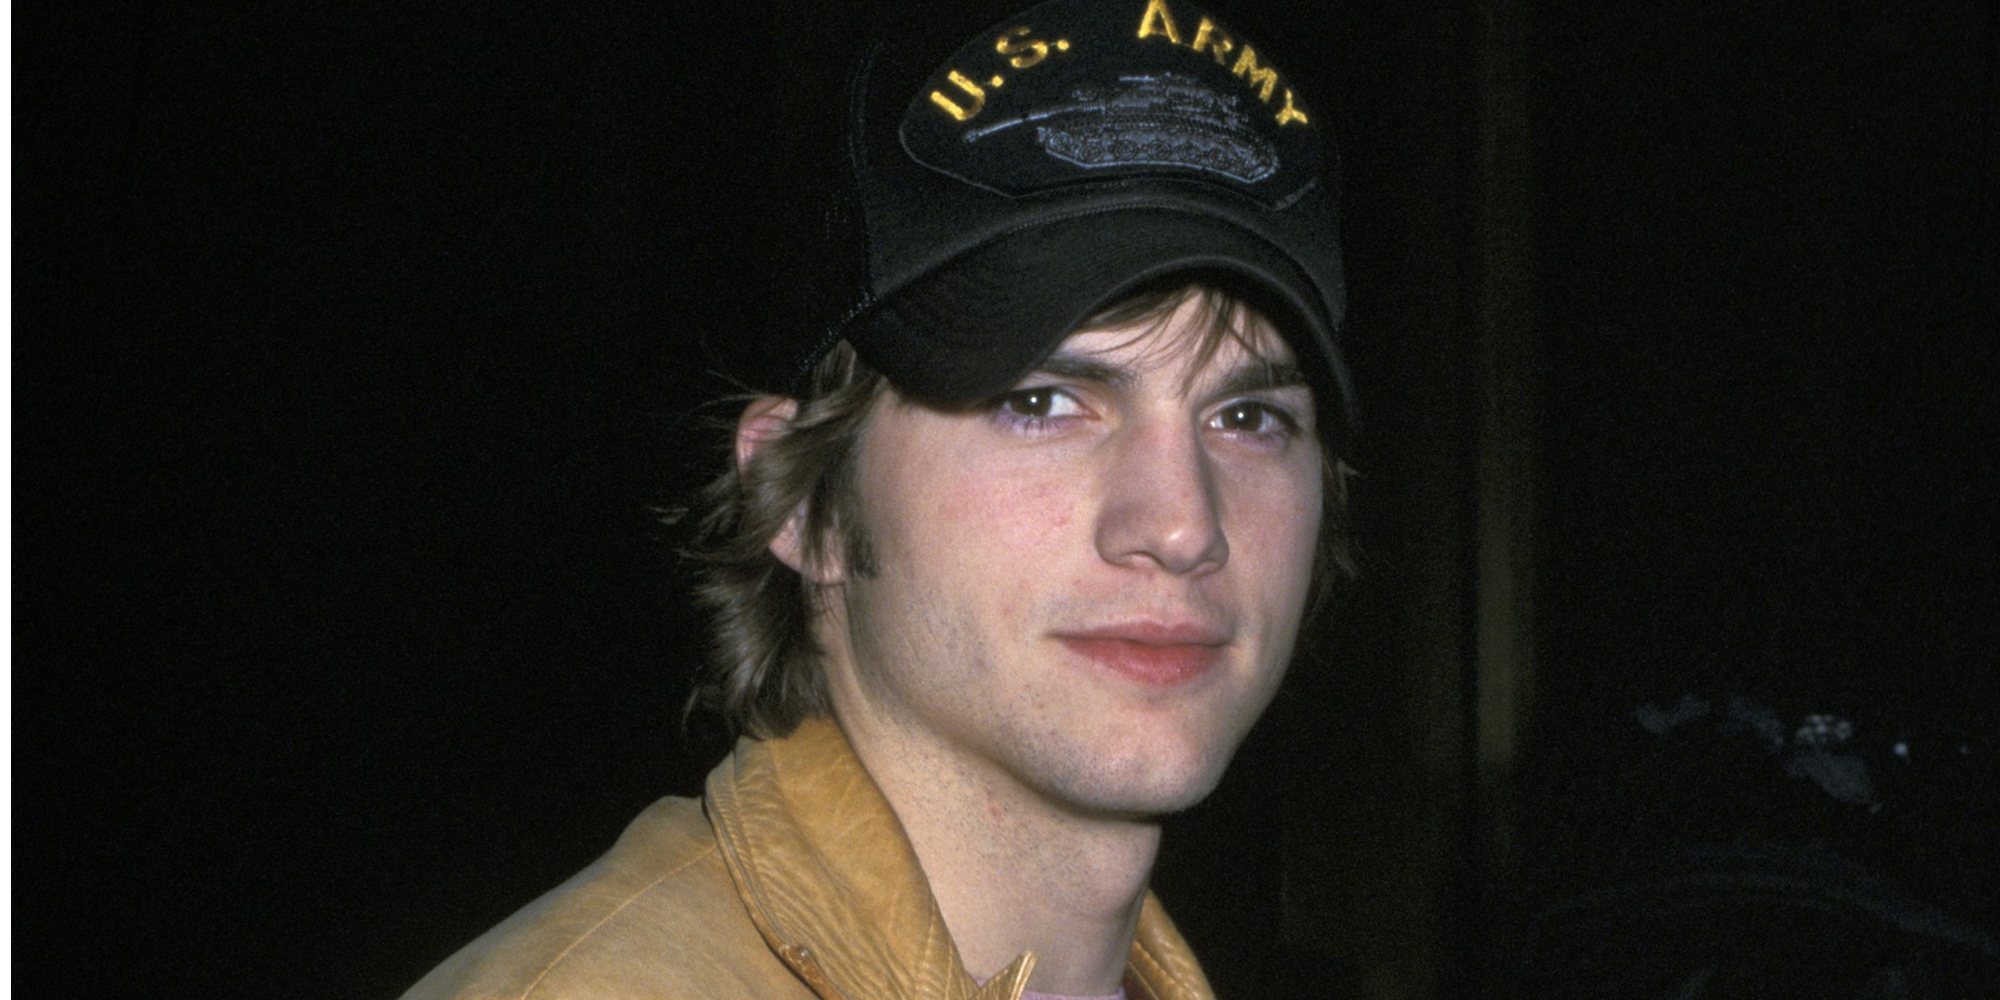 Ashton Kutcher podría testificar en el juicio por el brutal asesinato de su exnovia